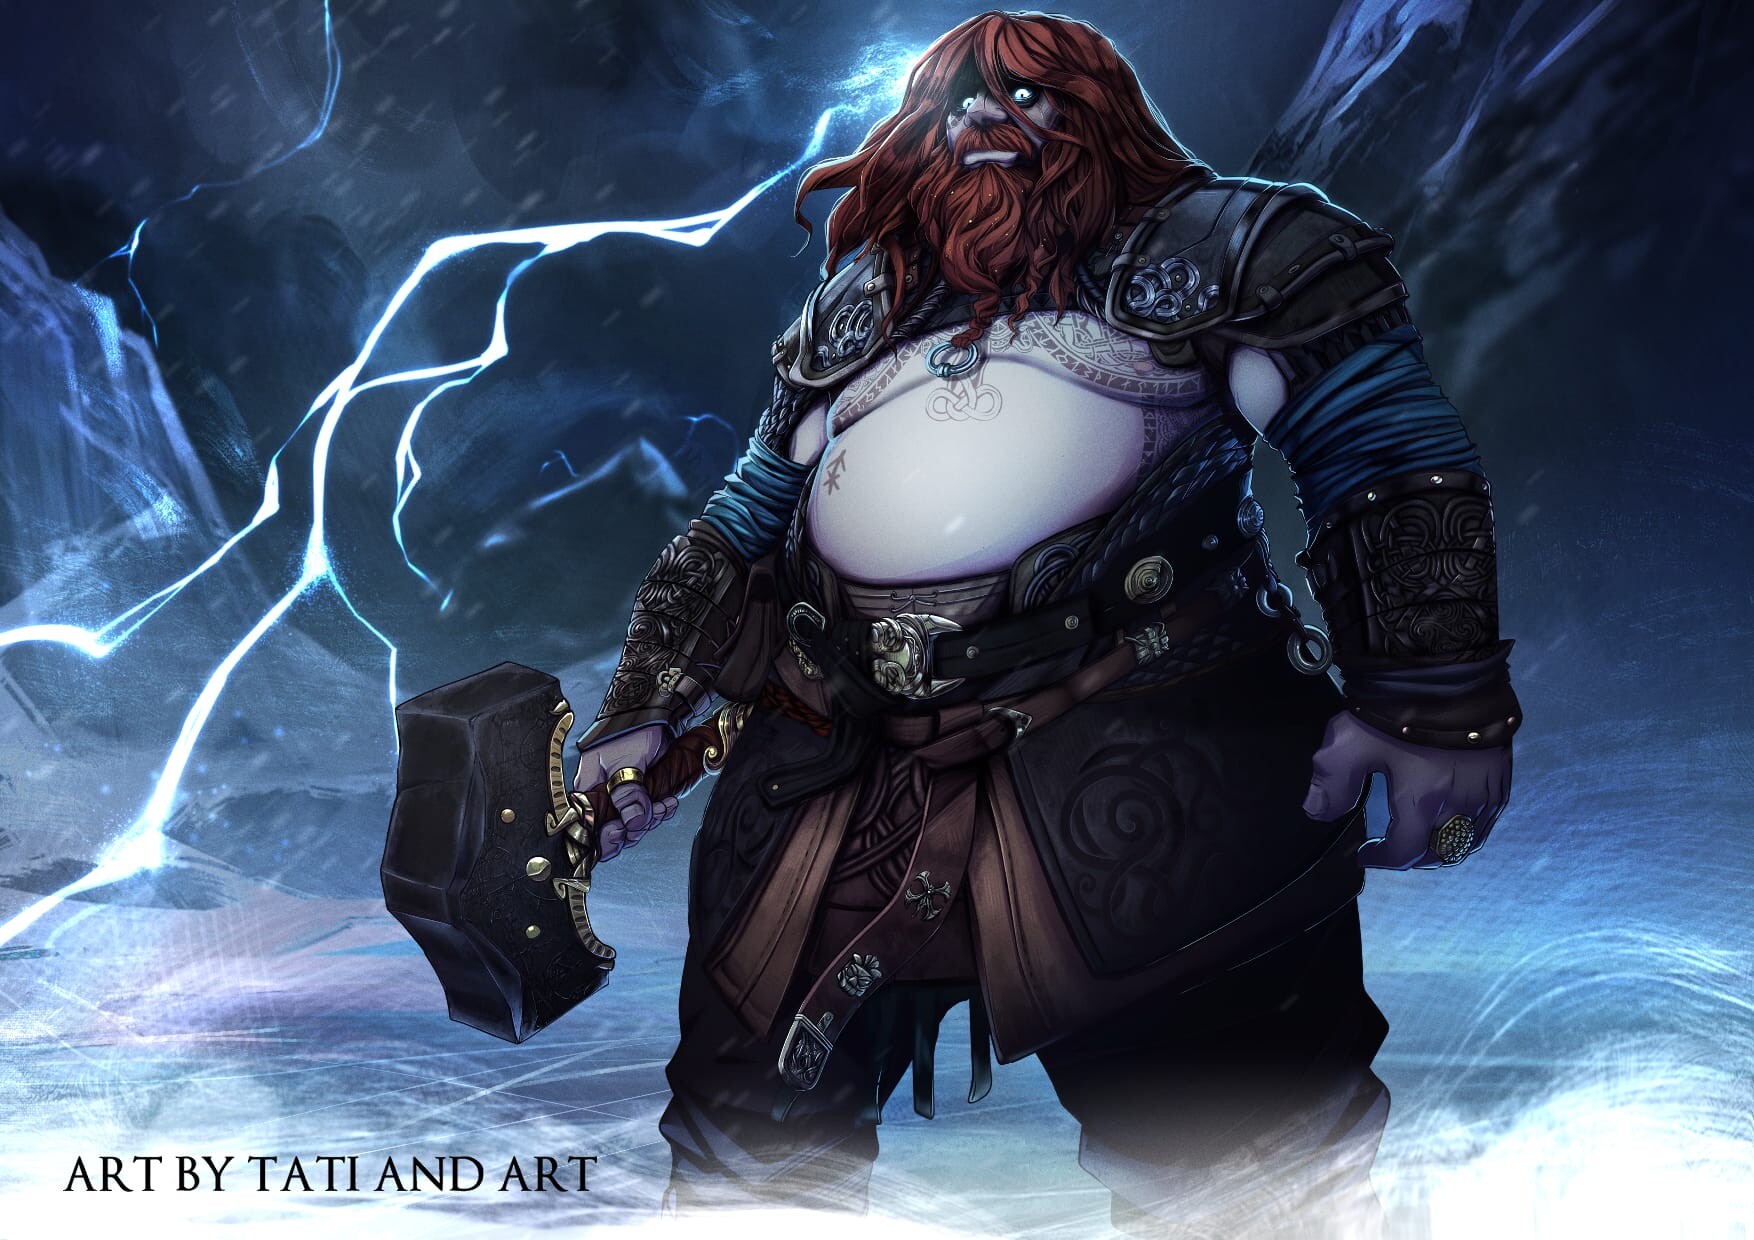 ArtStation - God of War Ragnarök